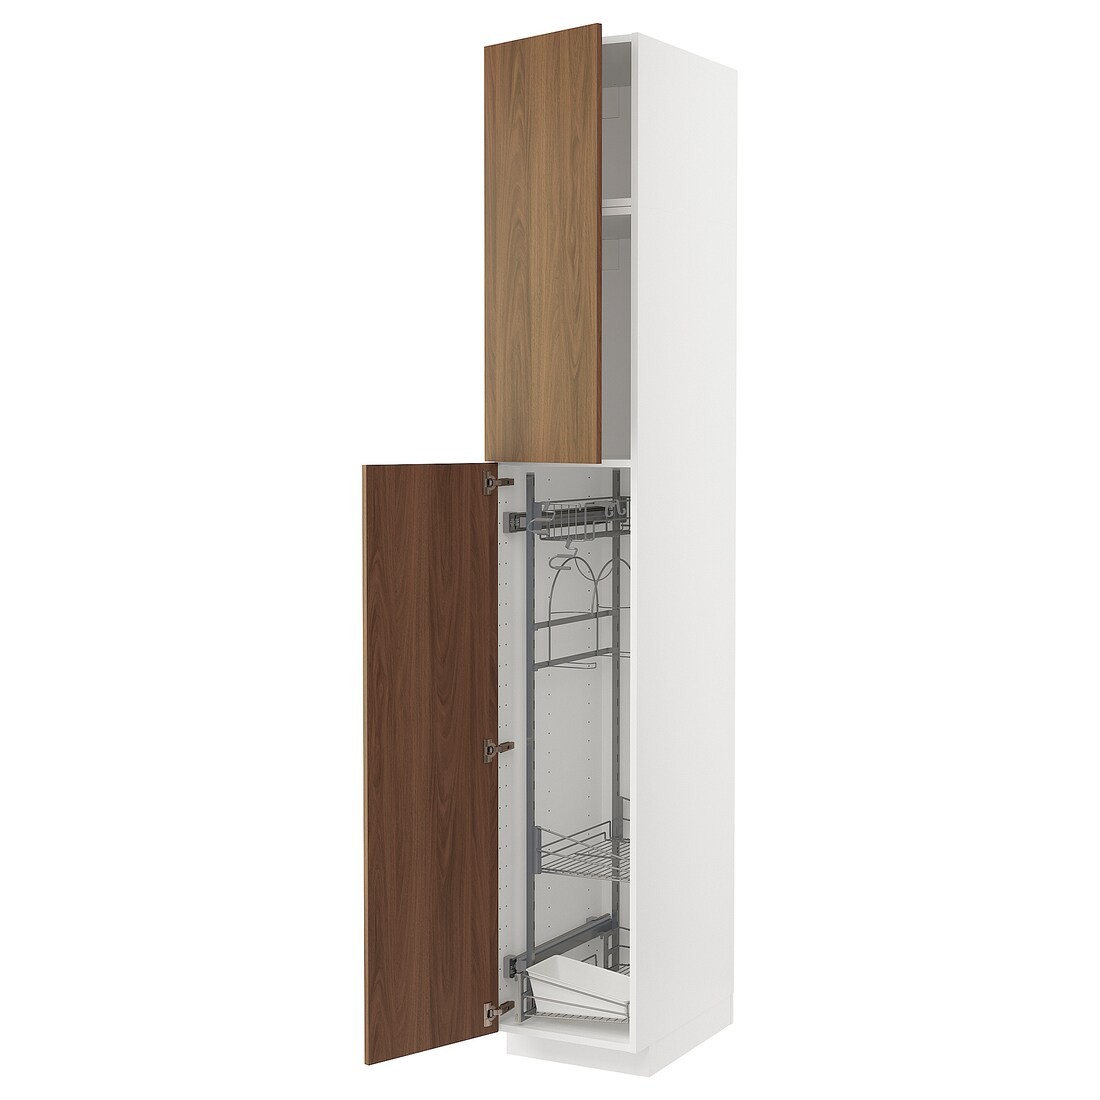 METOD Высокий шкаф с отделением для аксессуаров для уборки, белый / Имитация коричневого ореха, 40x60x240 см